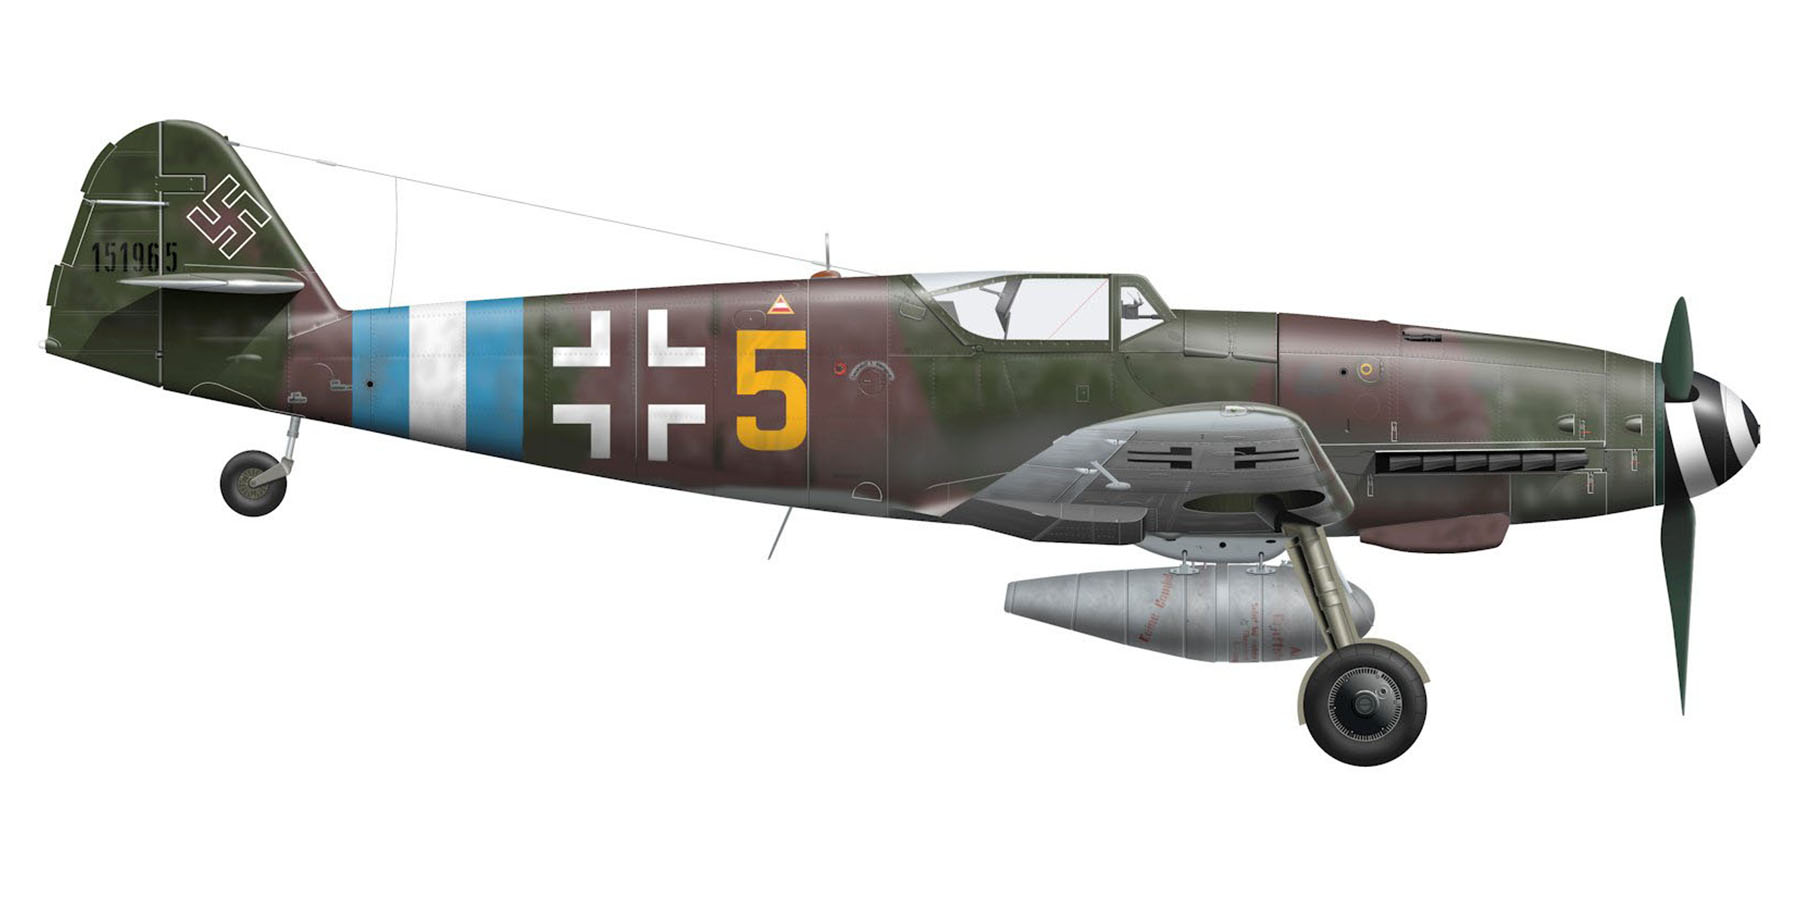 Messerschmitt Bf 109G10R3 Erla 3.JG300 Yellow 5 WNr 151965 Prague Kbely Czechoslovakia May 1945 0B